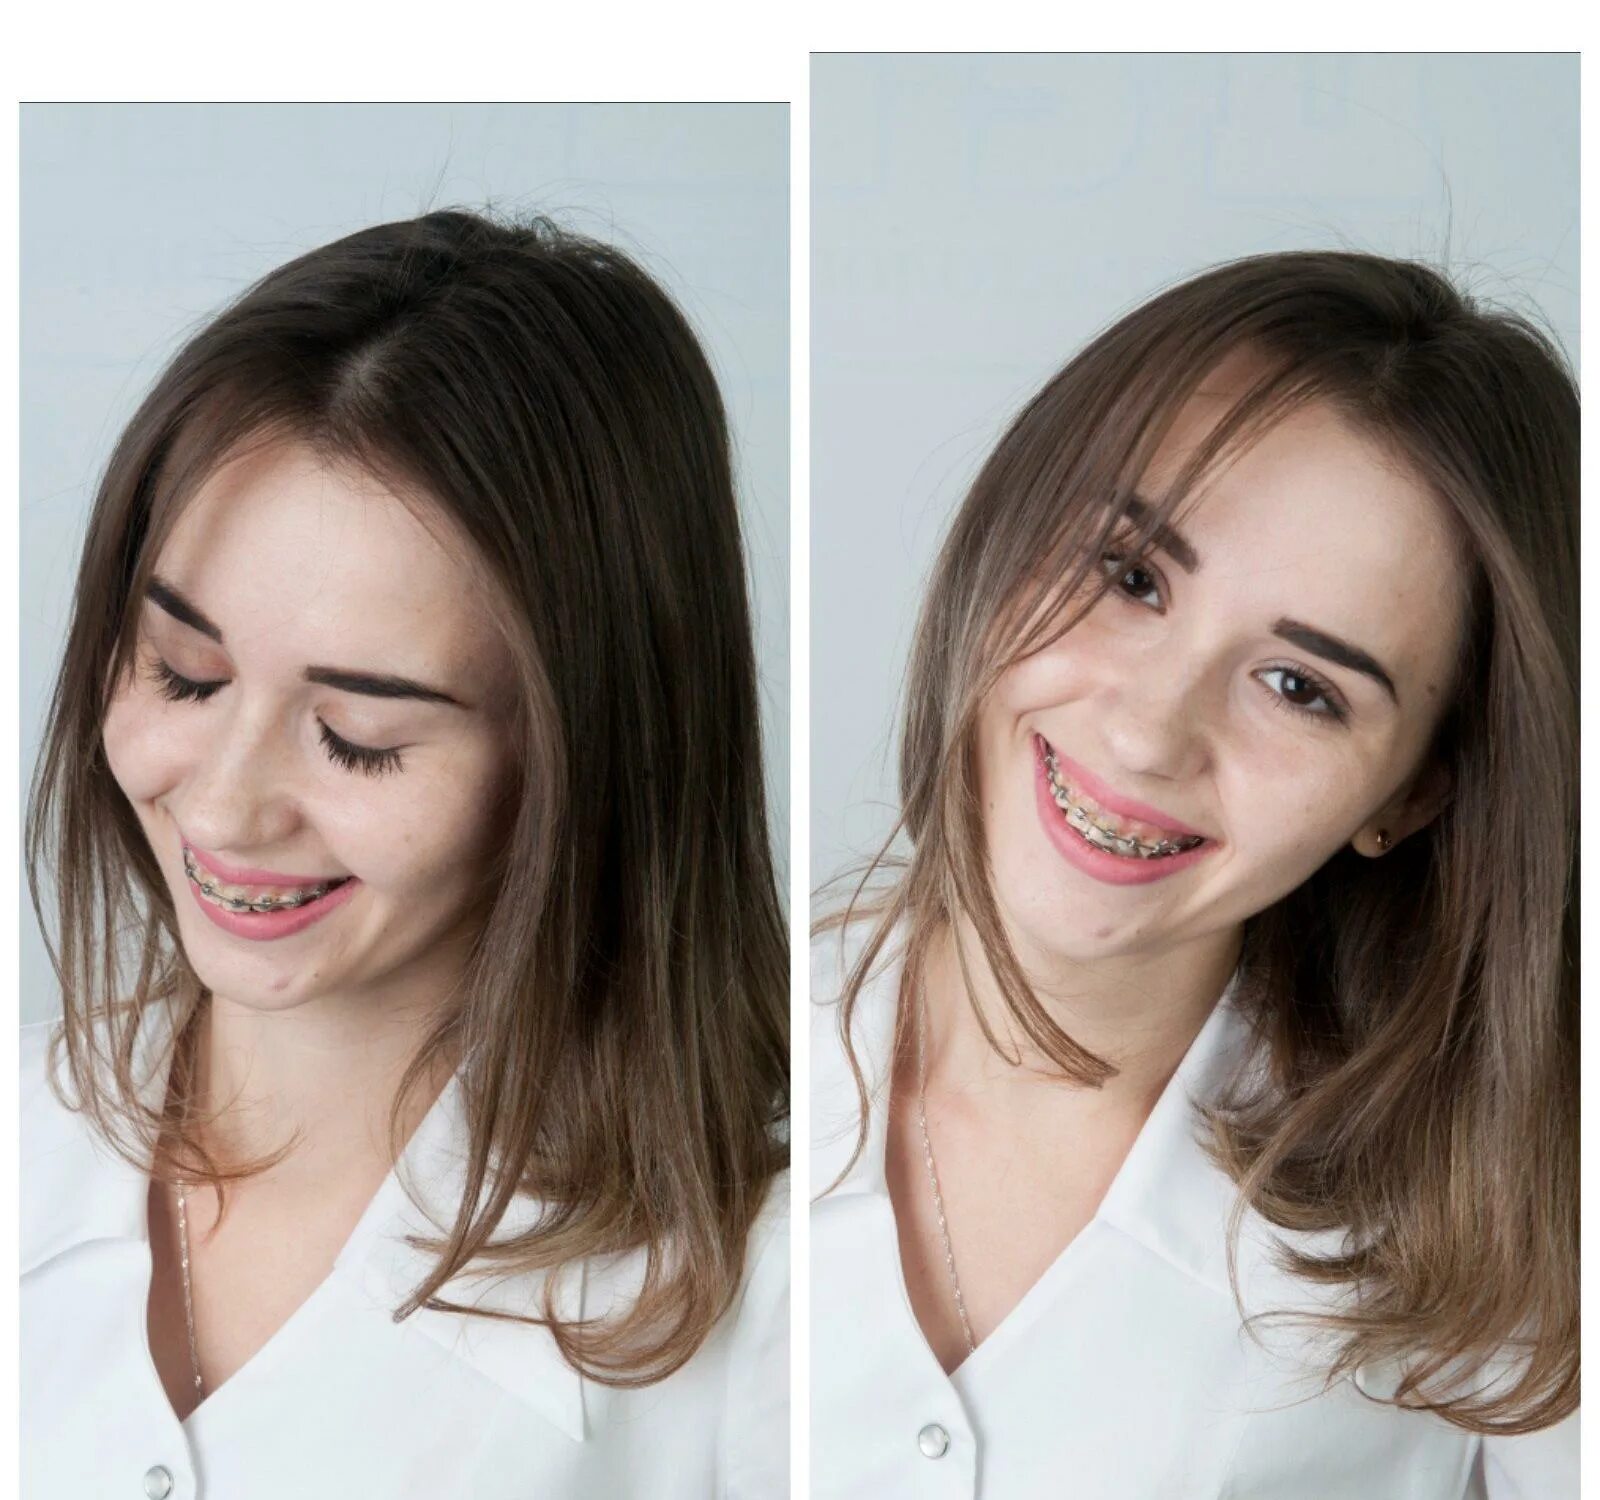 Овал лица до и после брекетов. Лицо до и после брекетов без улыбки. Изменения после брекетов